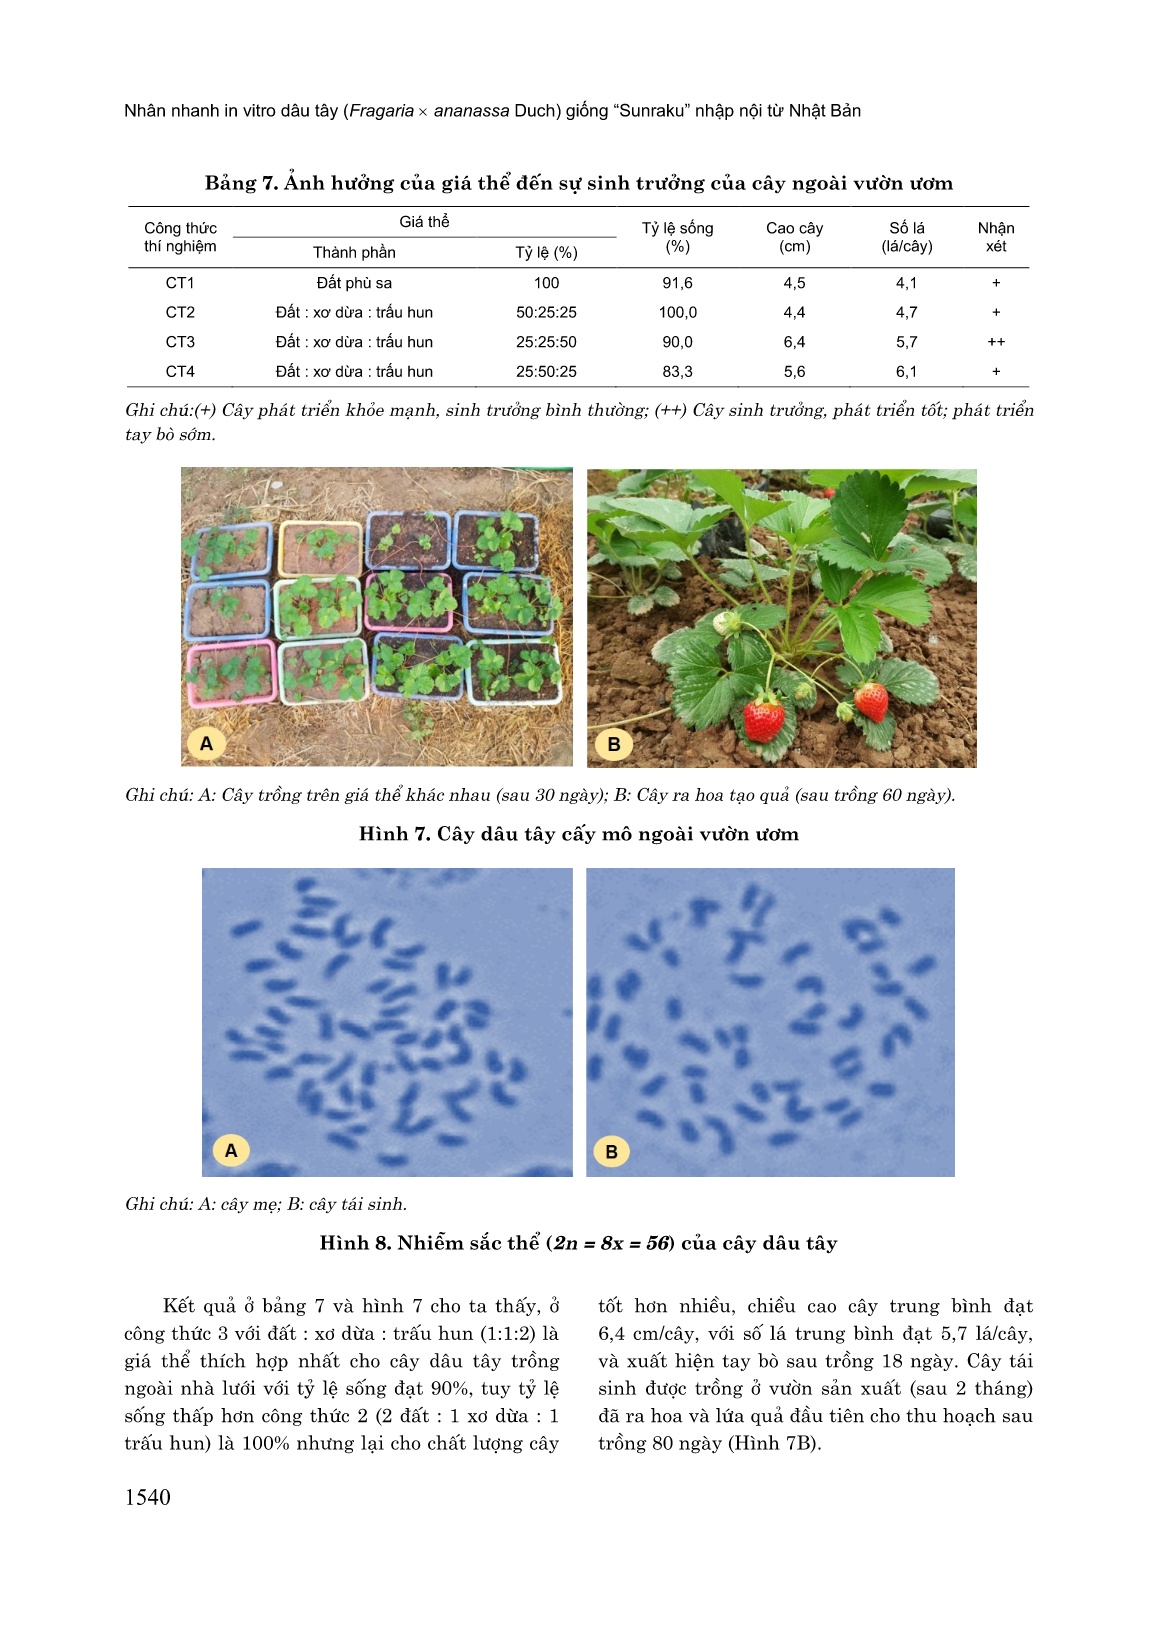 Nhân nhanh in vitro dâu tây (Fragaria x Ananassa Duch) giống “Sunraku” nhập nội từ Nhật Bản trang 10